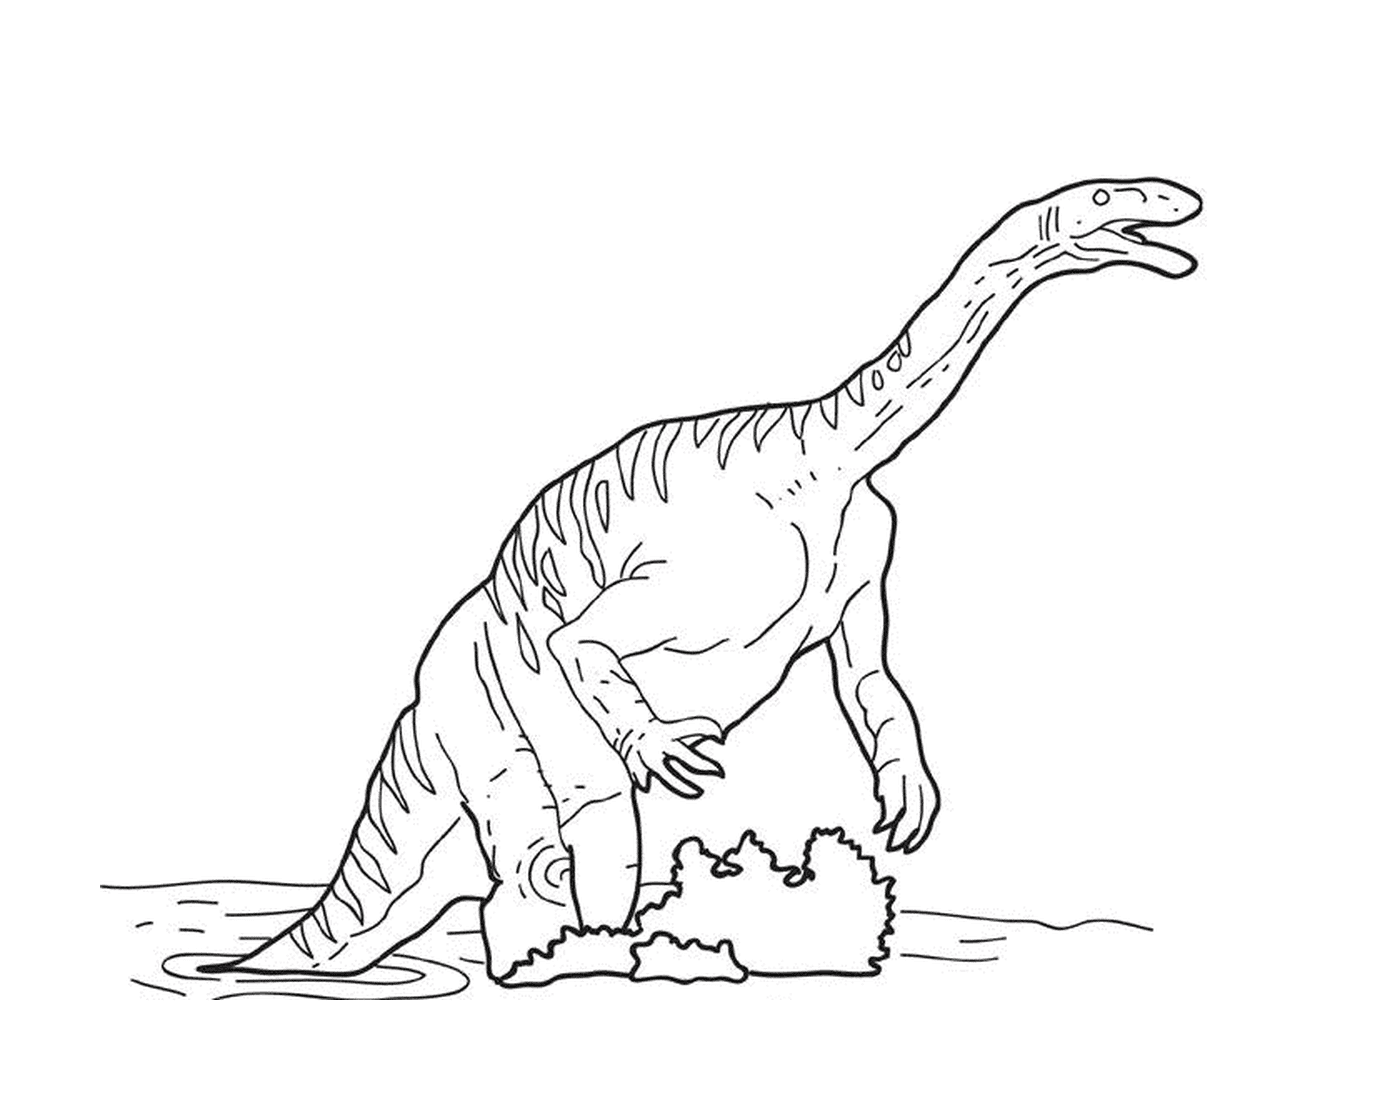   Un dinosaure jouant dans l'eau 